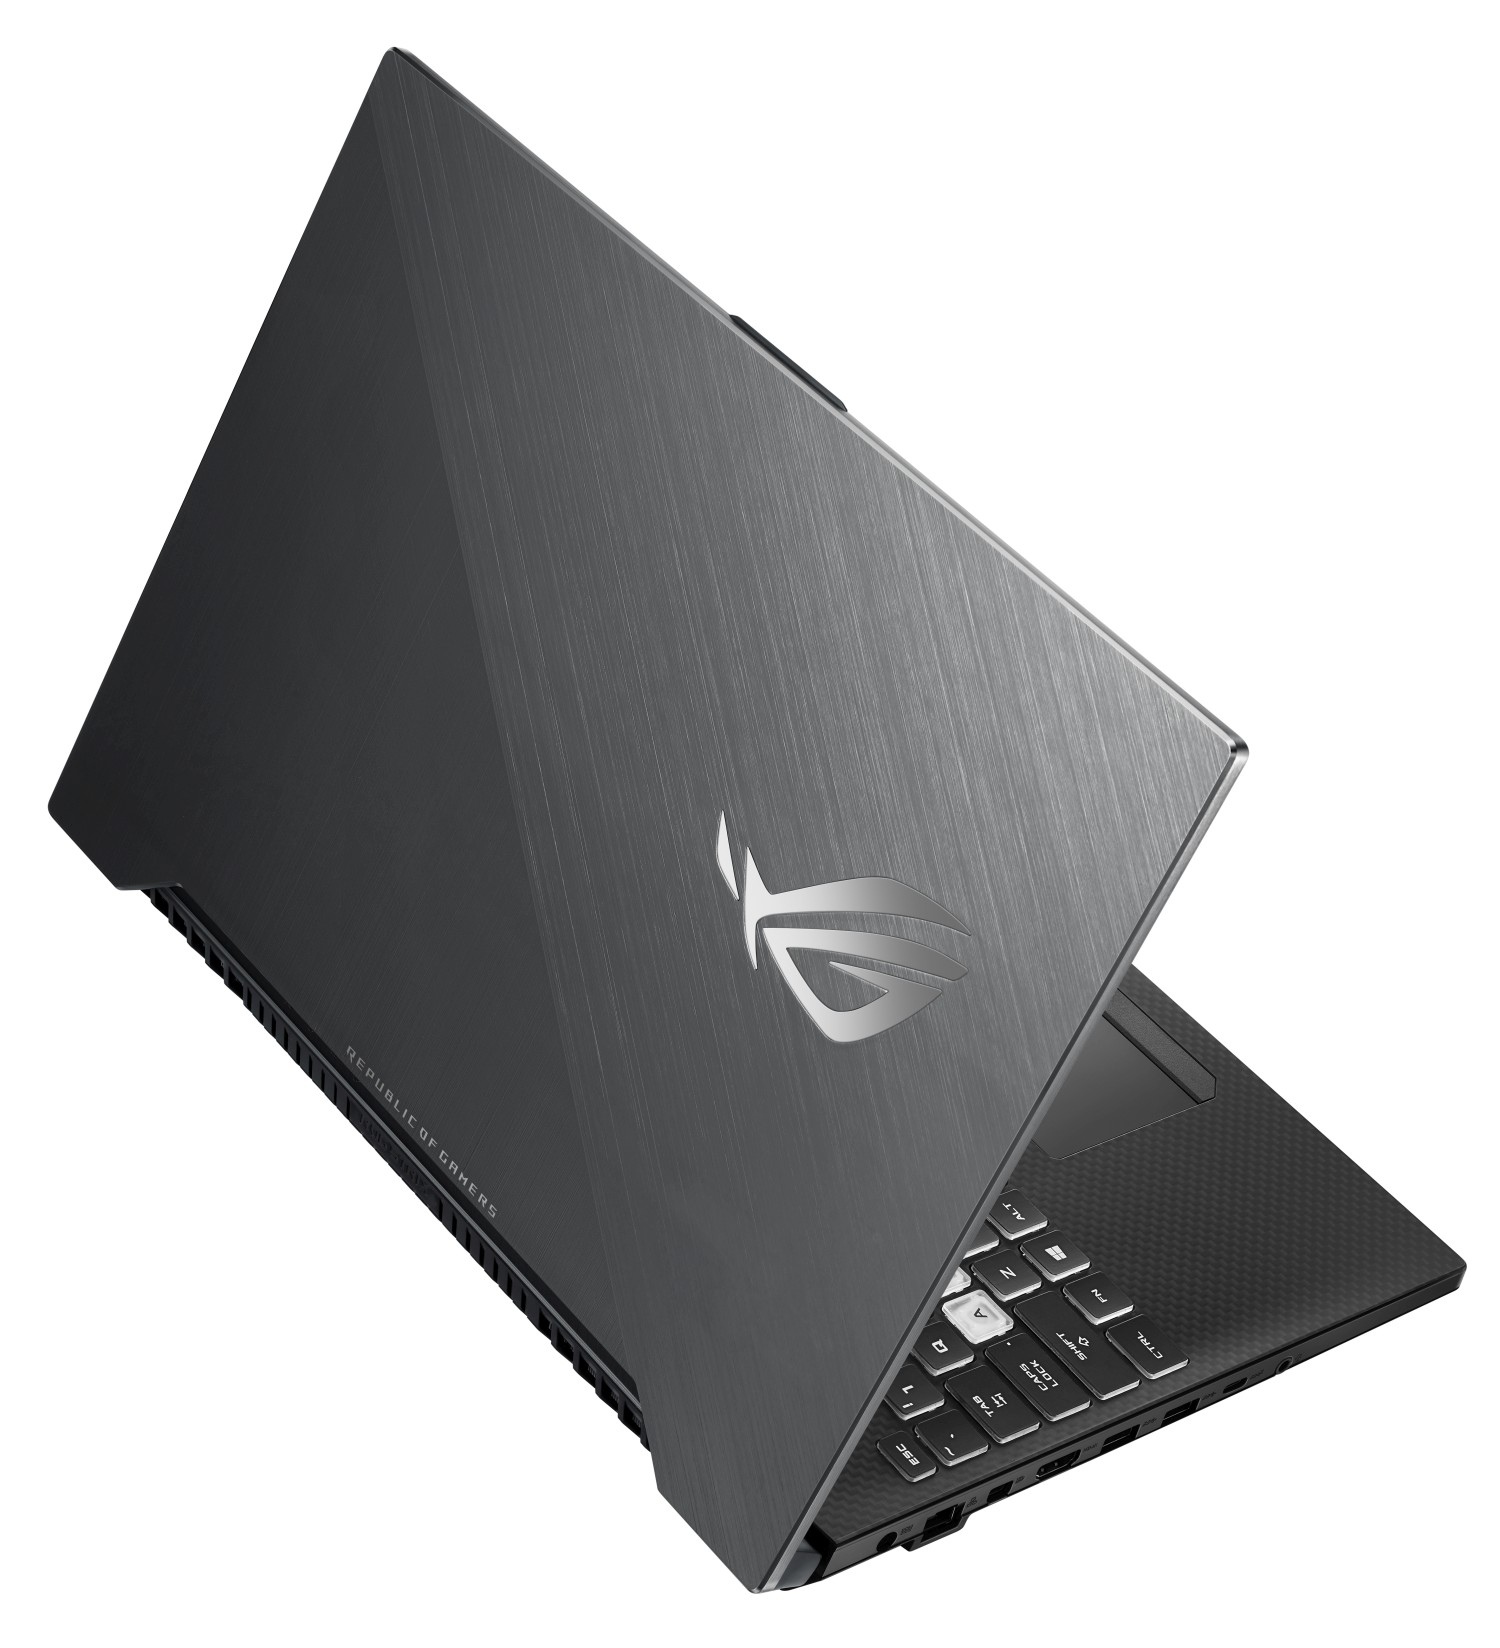 Asus ROG Strix SCAR II je herní notebook s obnovovací frekvencí displeje 144 Hz